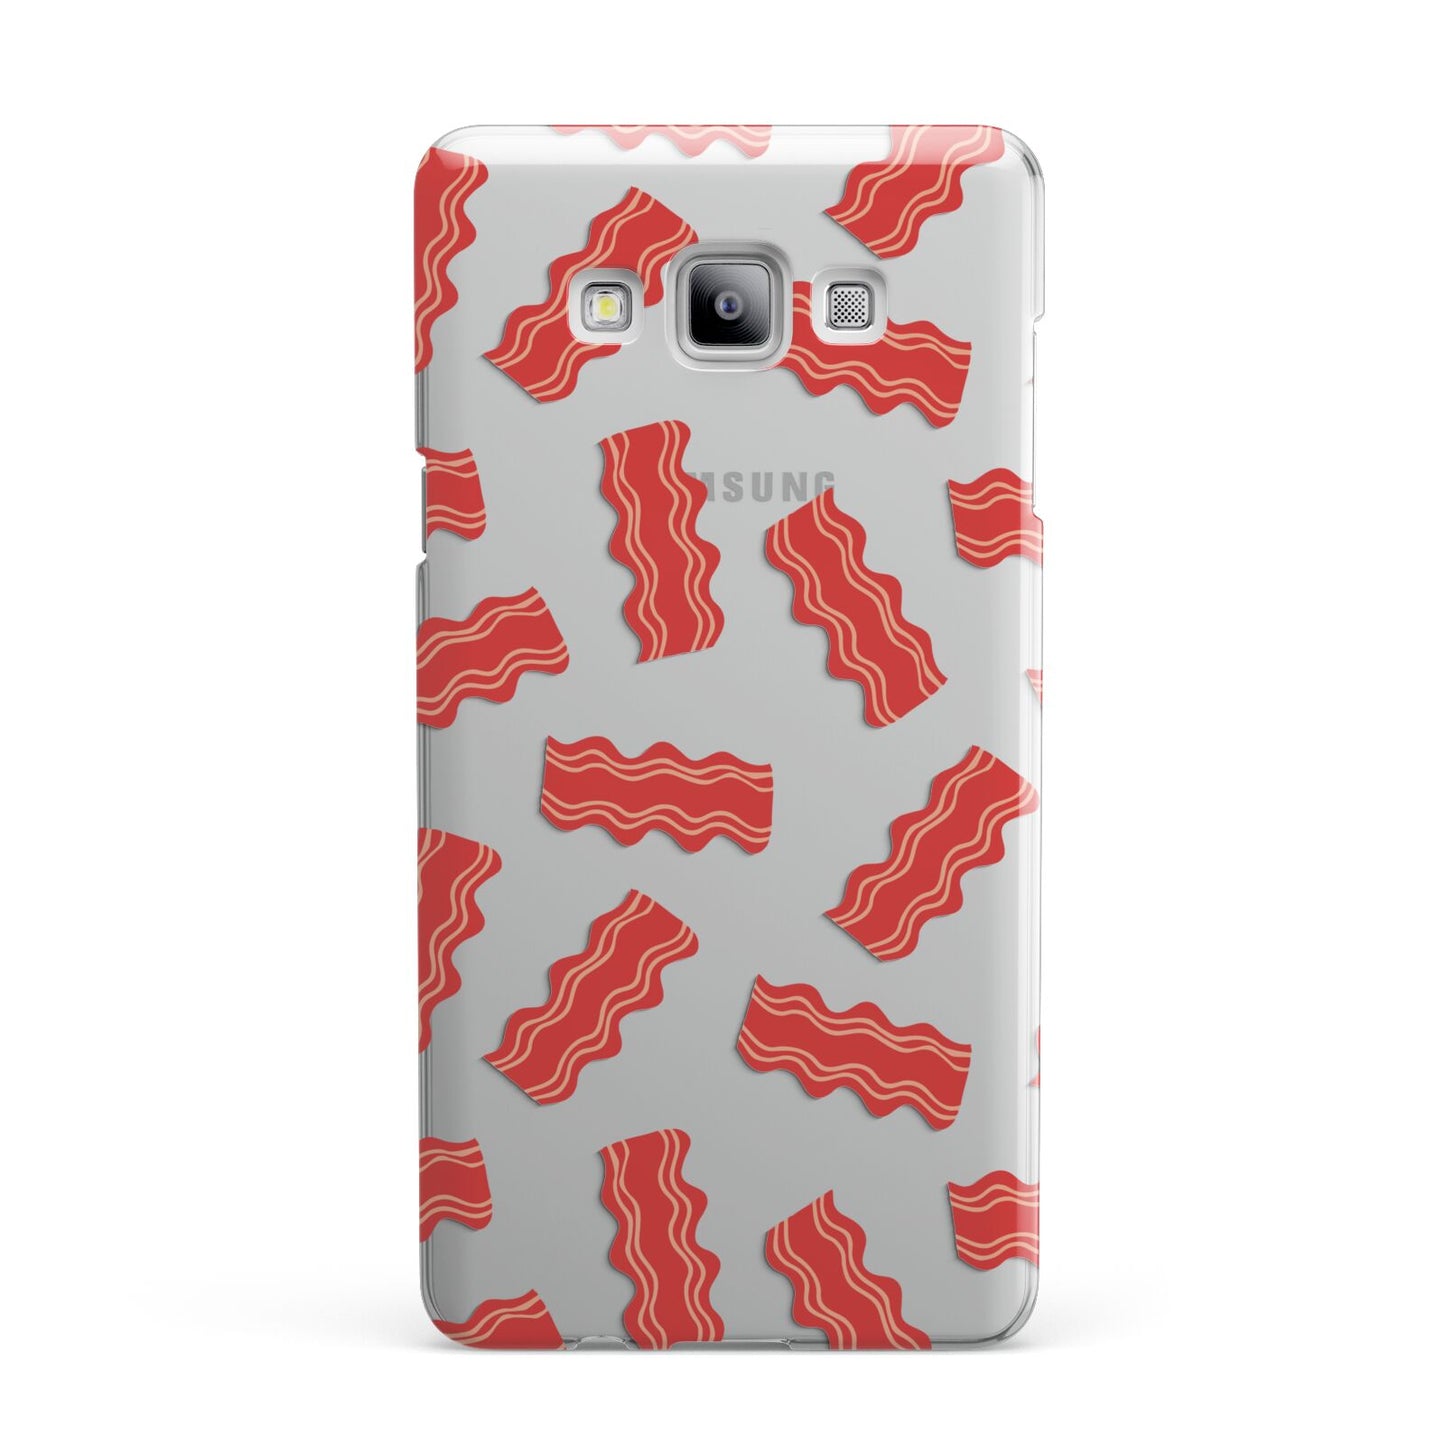 Bacon Samsung Galaxy A7 2015 Case